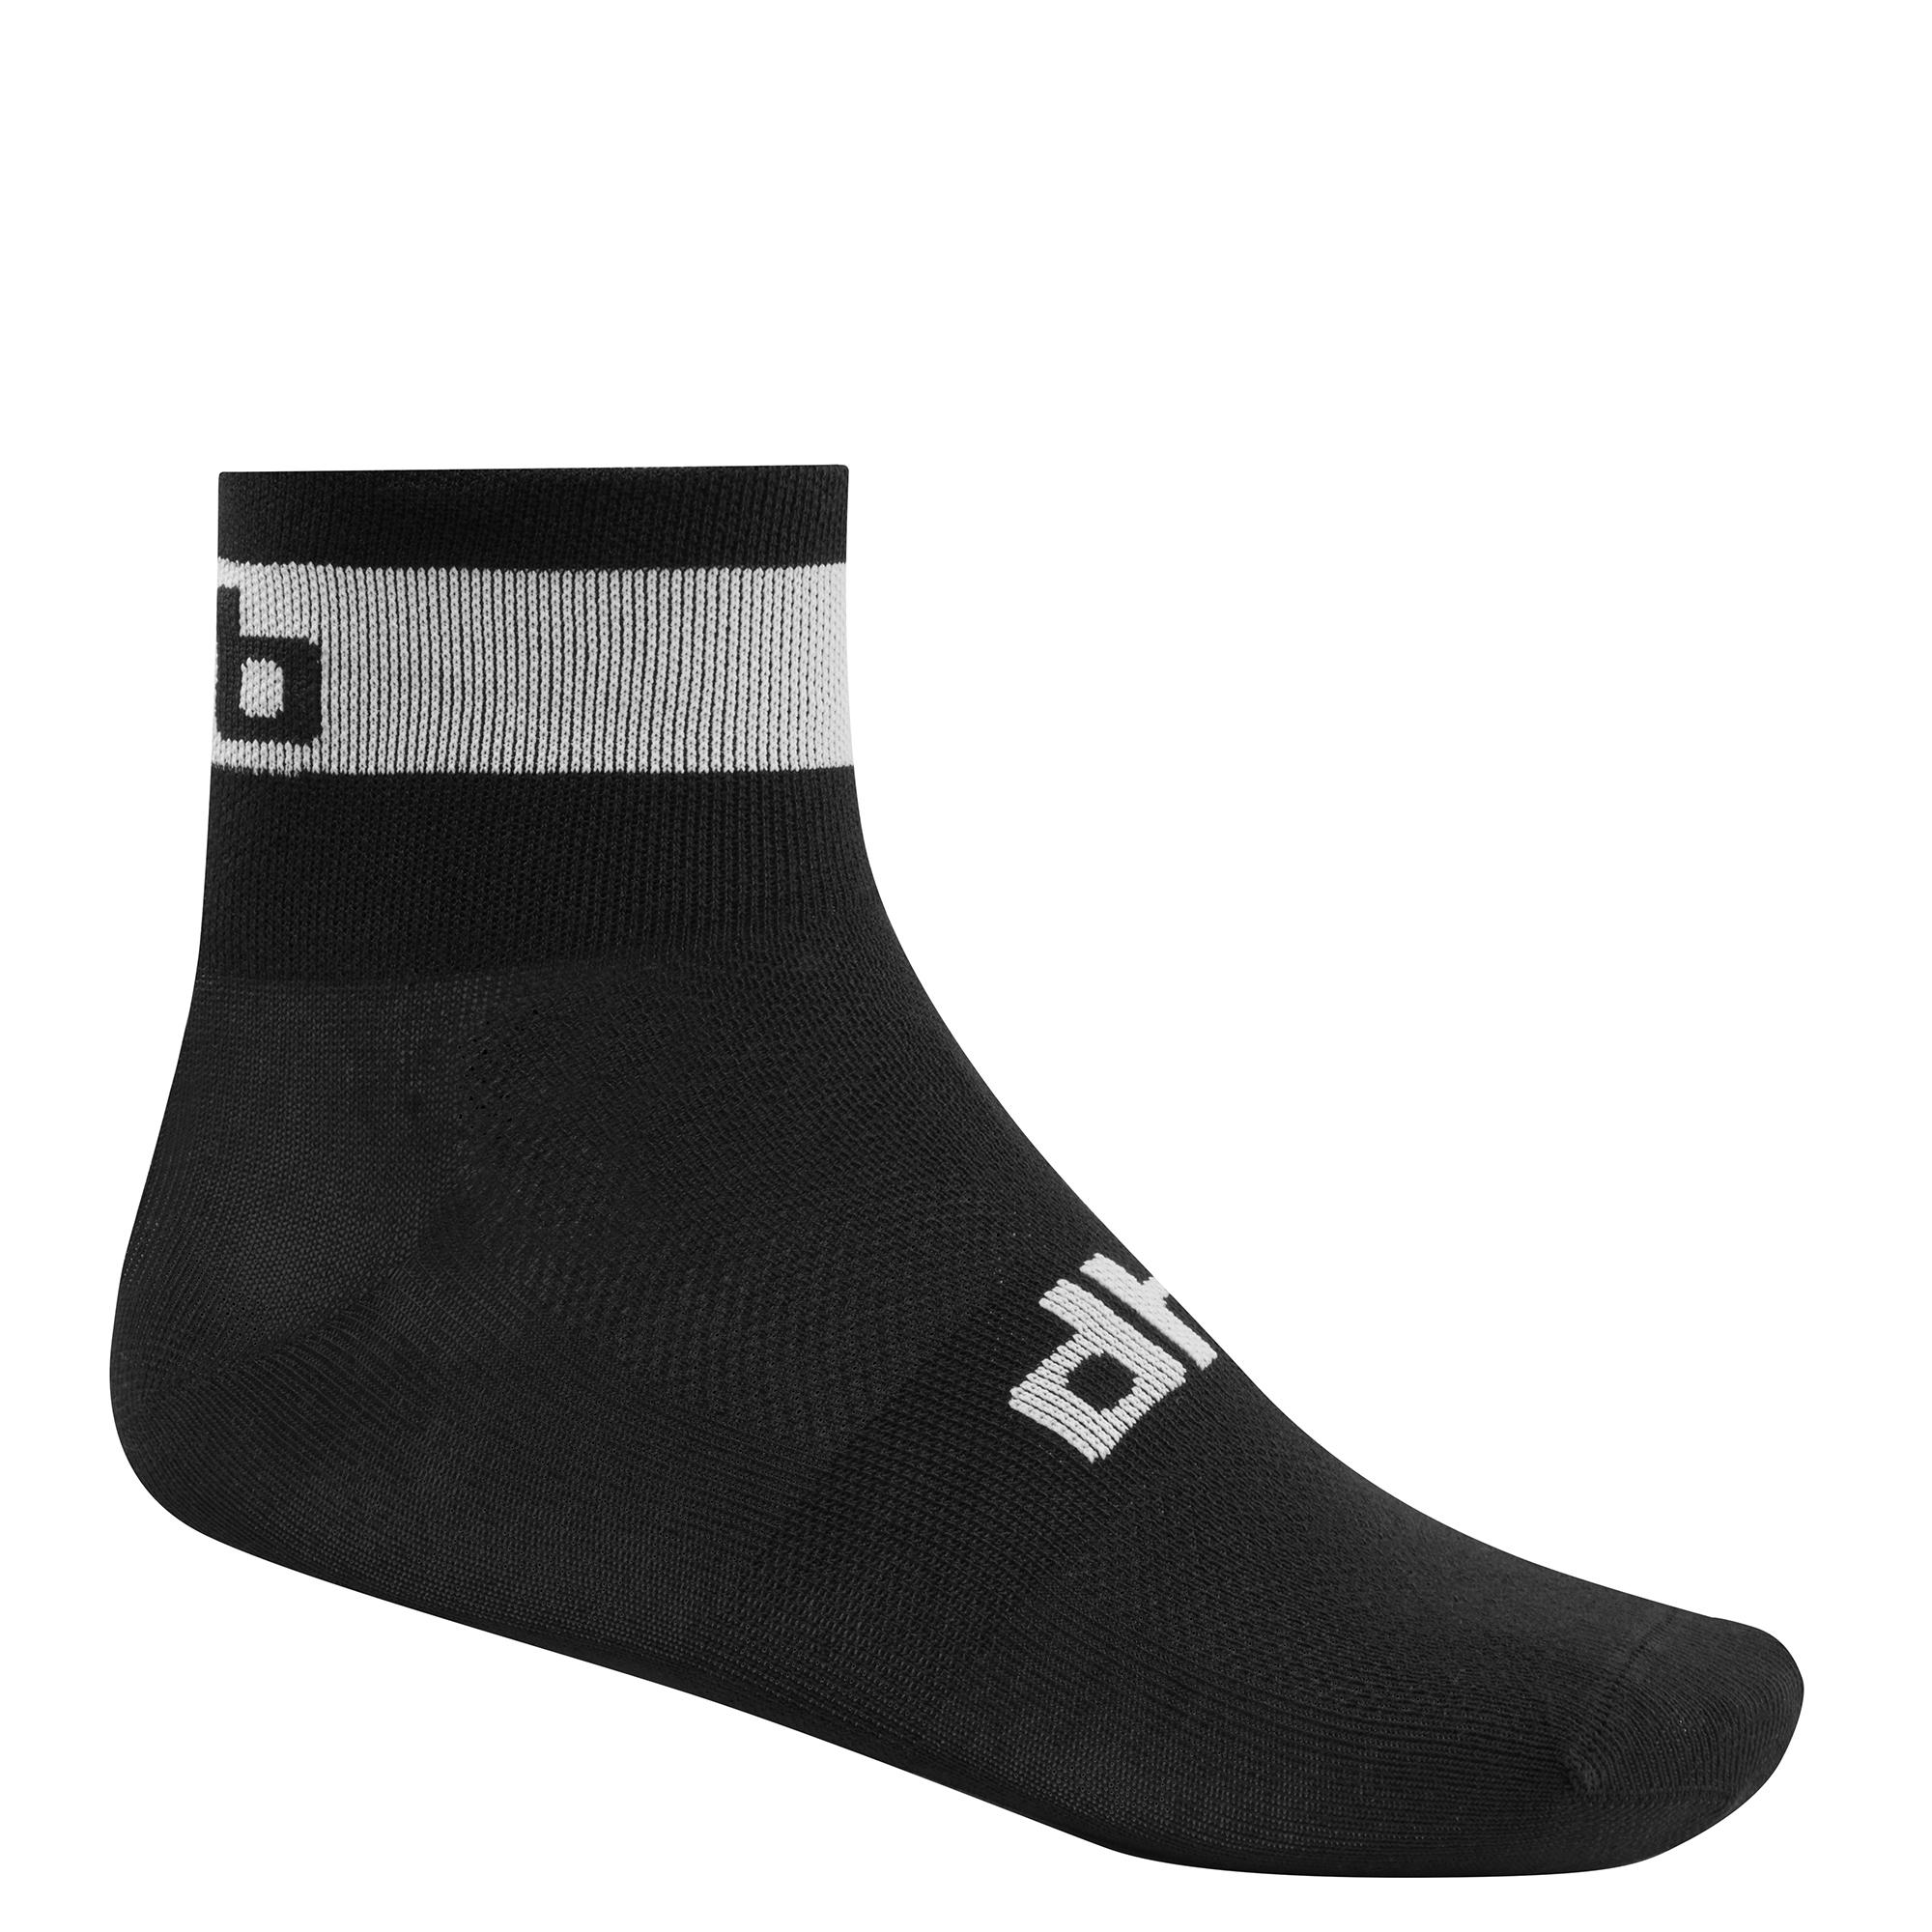 Dhb Sock - Black/white